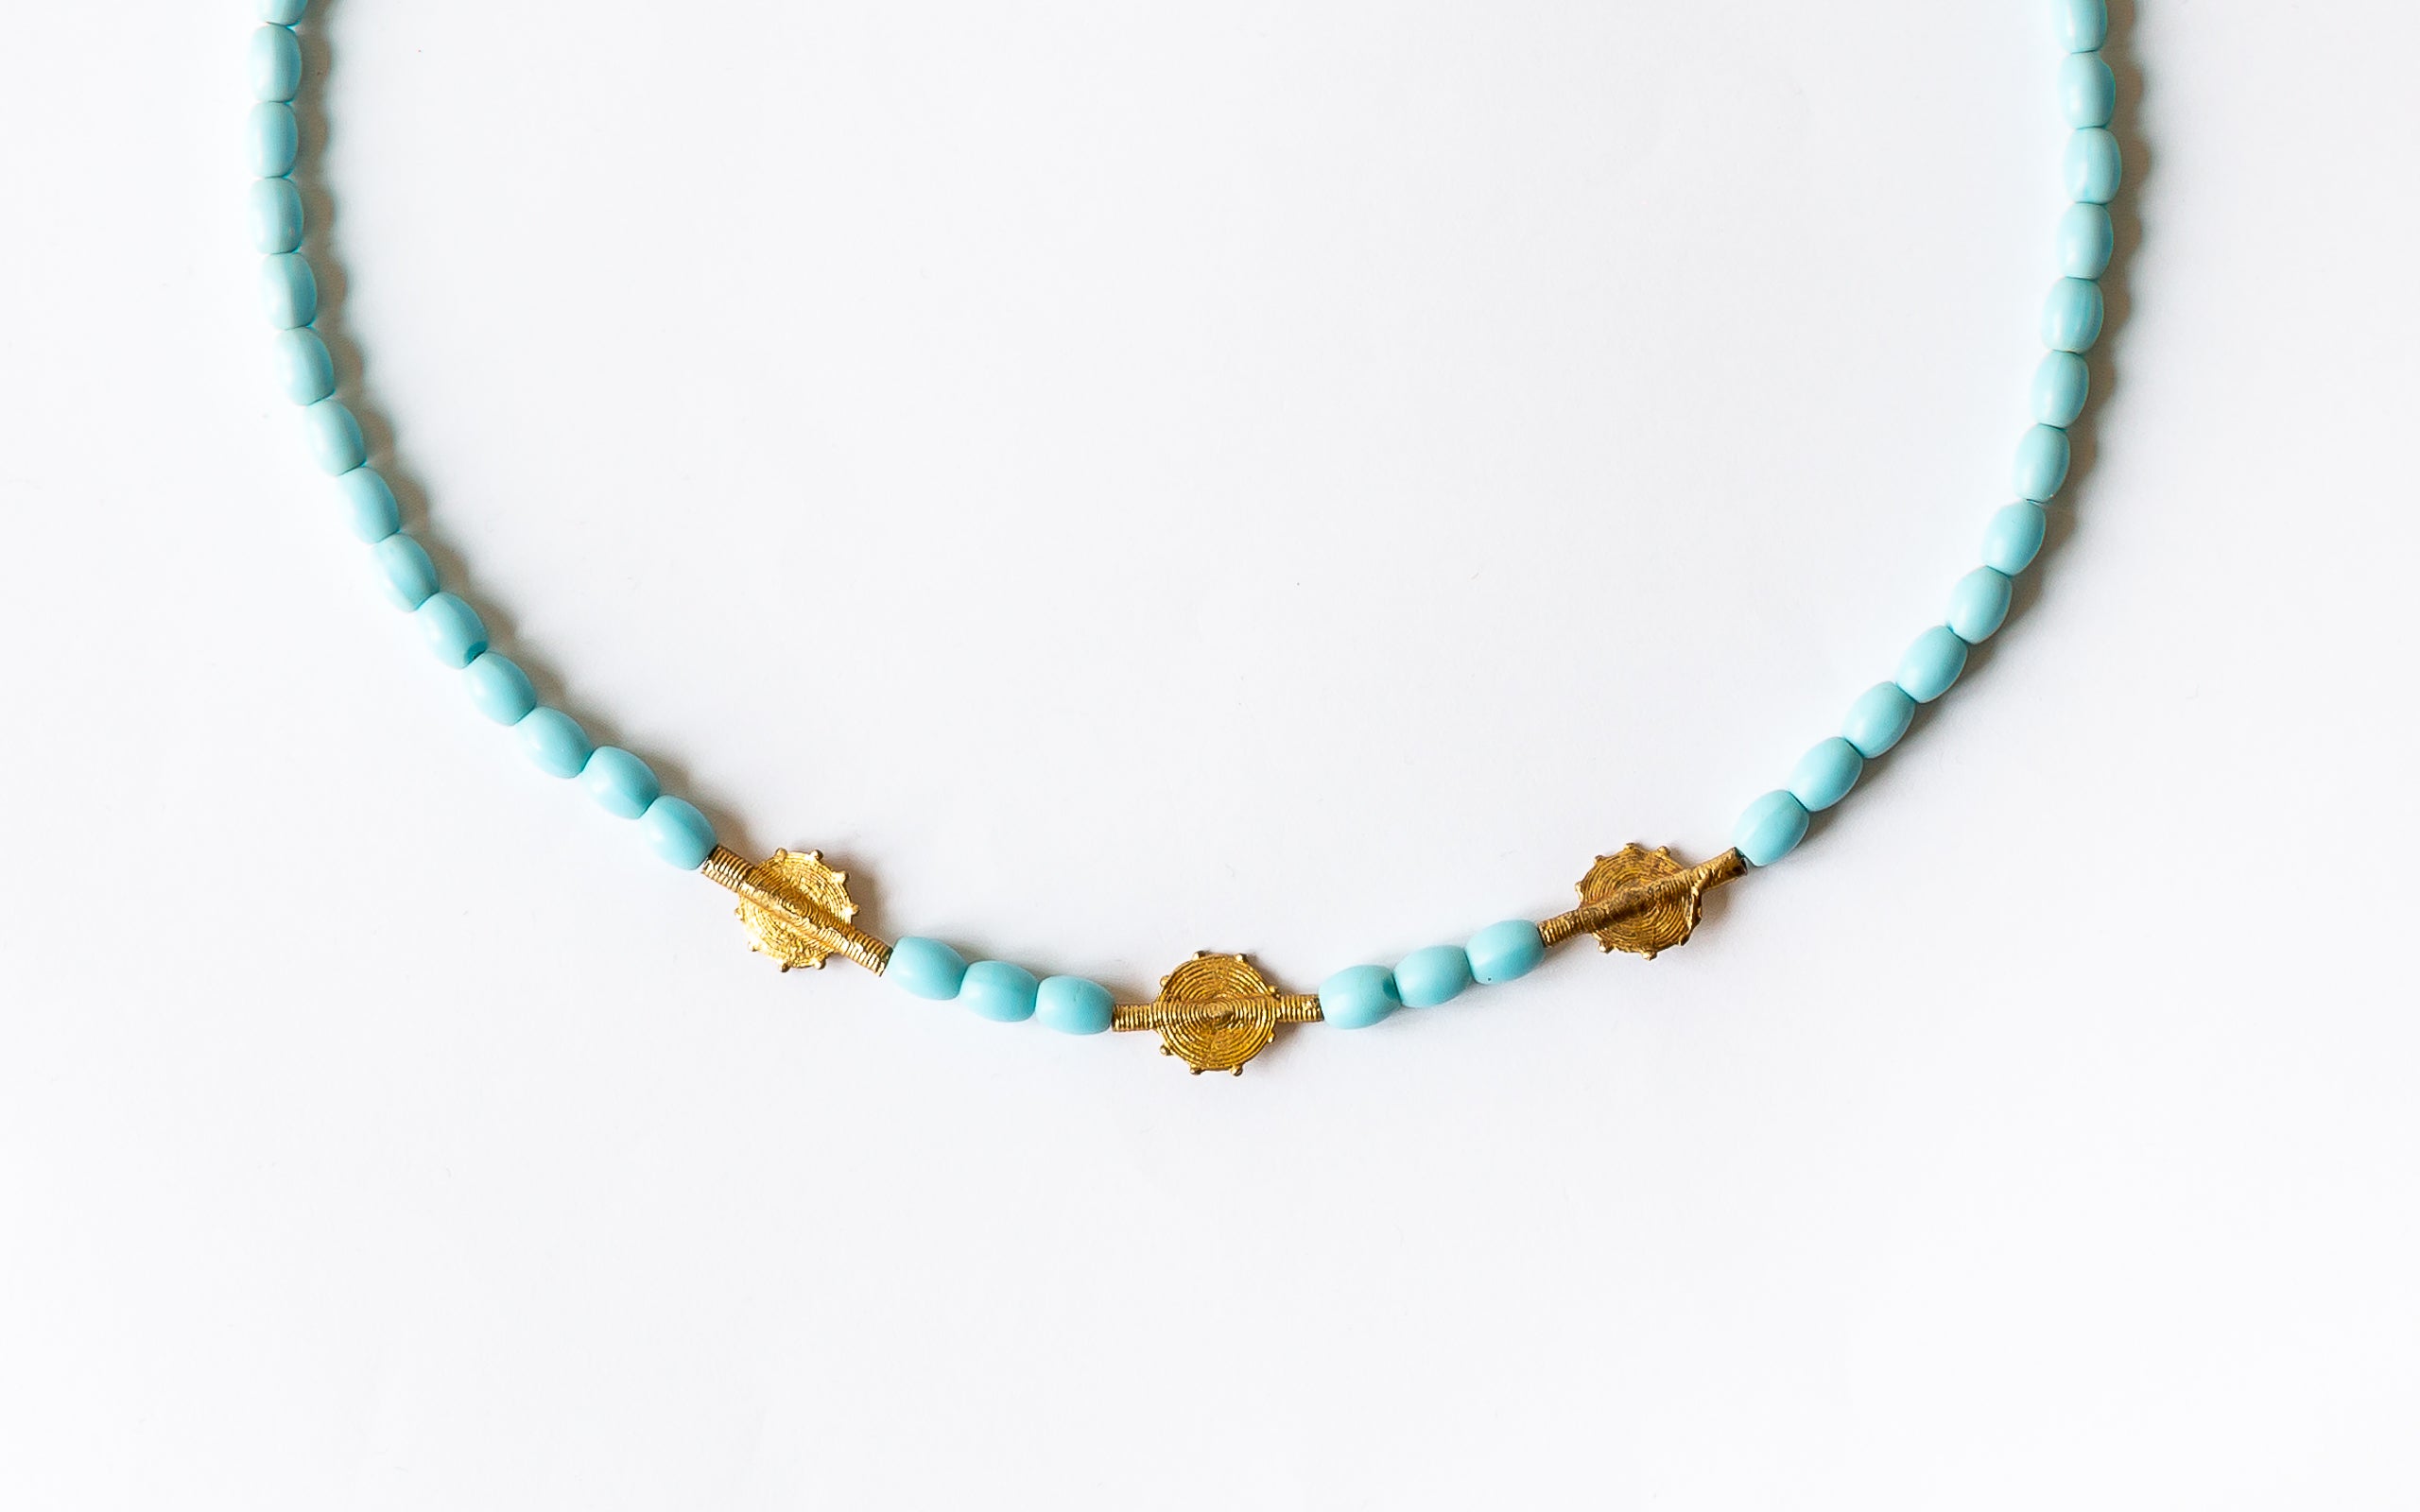 Halskettendetail der Perlen in Türkisfarbe und goldene Scheibenperlen.